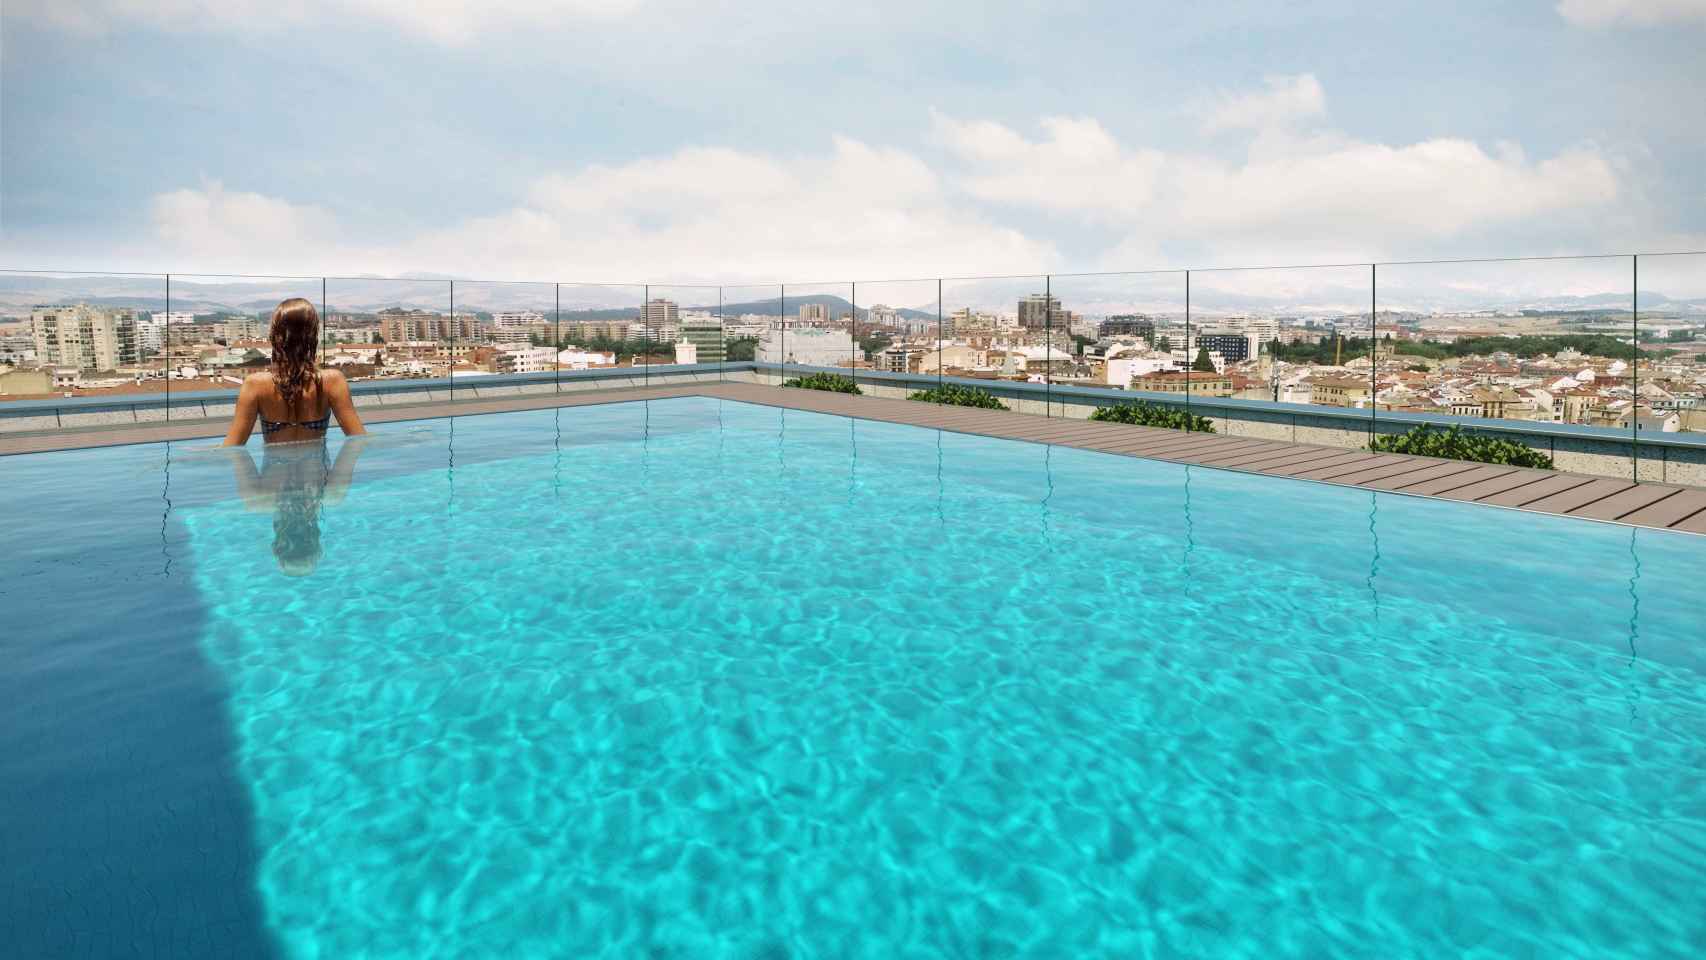 La piscina con solárium en la azotea de la promoción Atalaya de Aedas Homes en Pamplona.